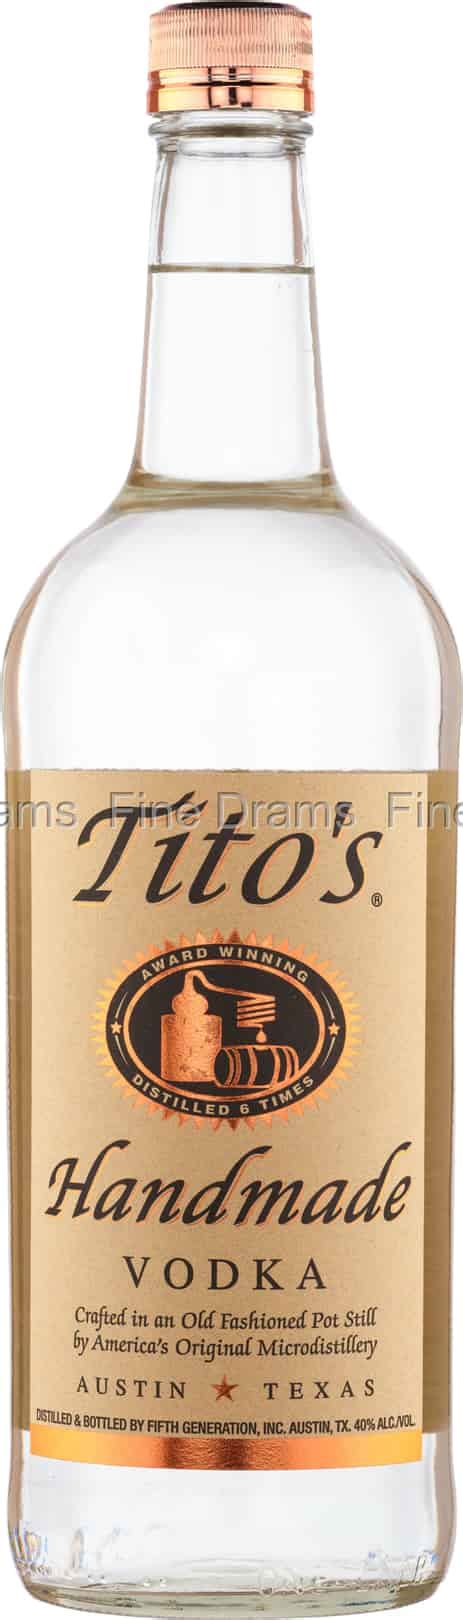 tito s handmade vodka 1 liter